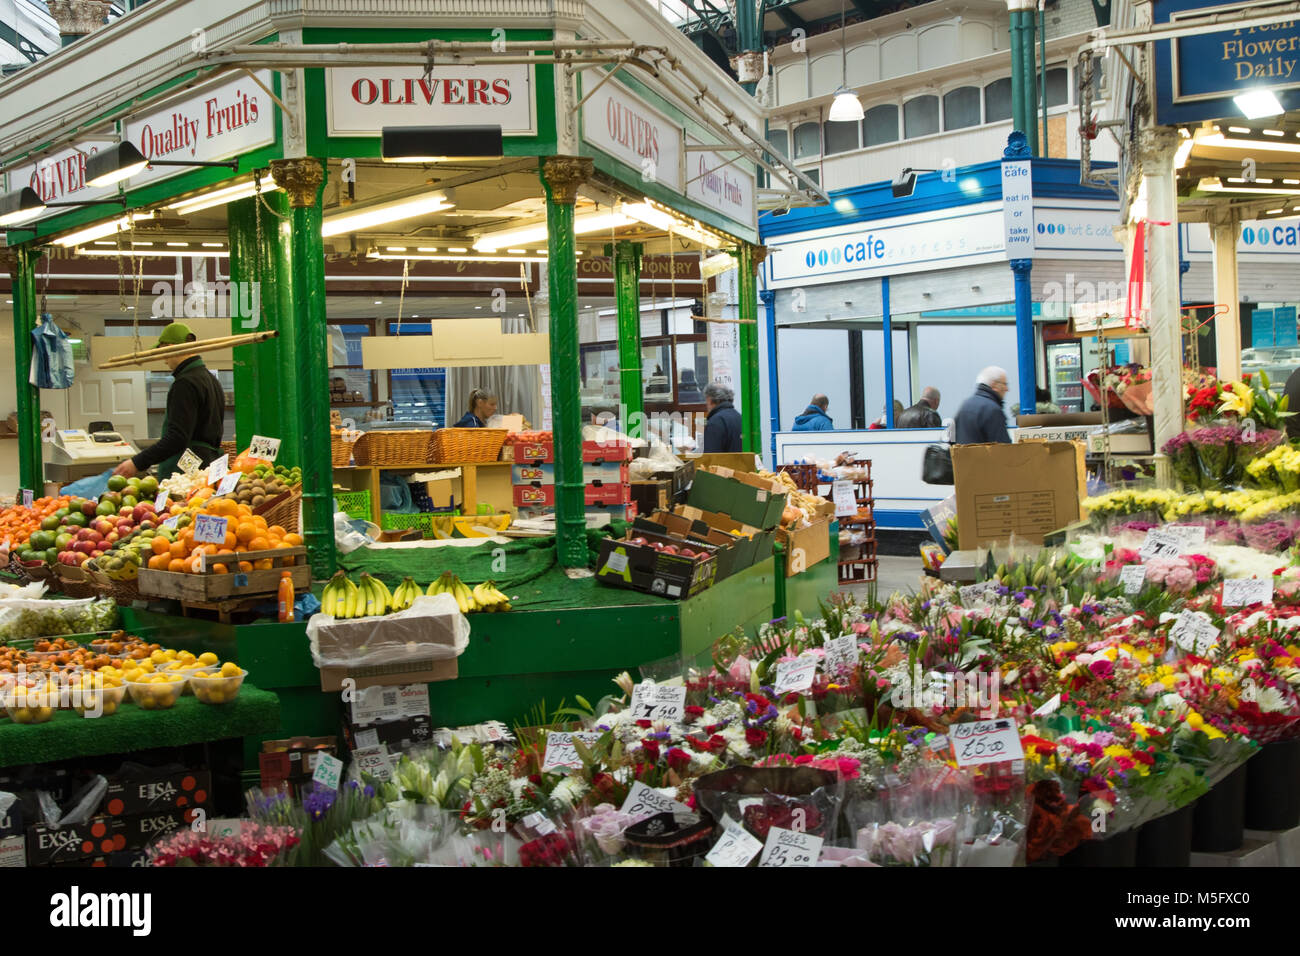 Fleurs et fruits frais cale au Leeds Kirkgate Market, George Street, West Yorkshire, Angleterre, Royaume-Uni Banque D'Images